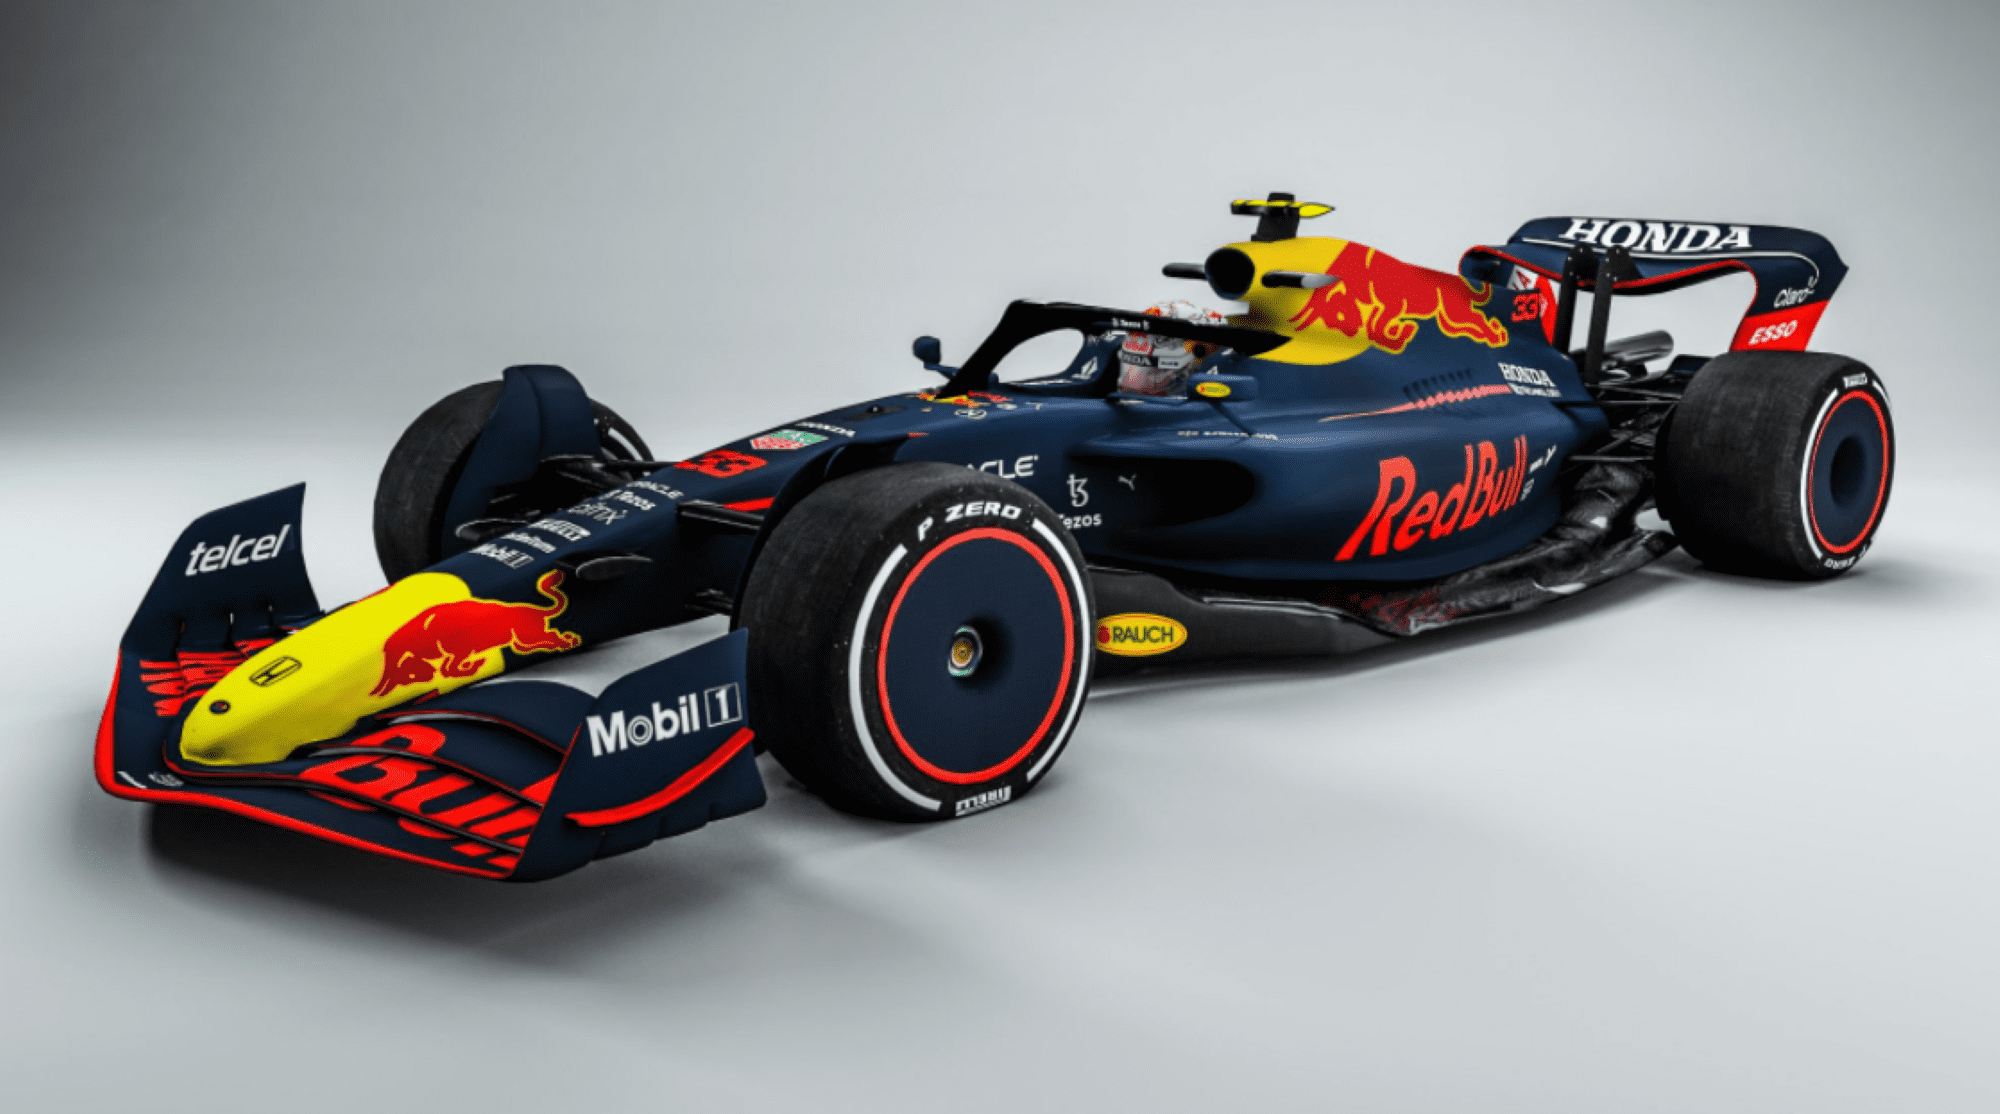 Galeria o carro da F1 2022 com as pinturas das equipes de 2021